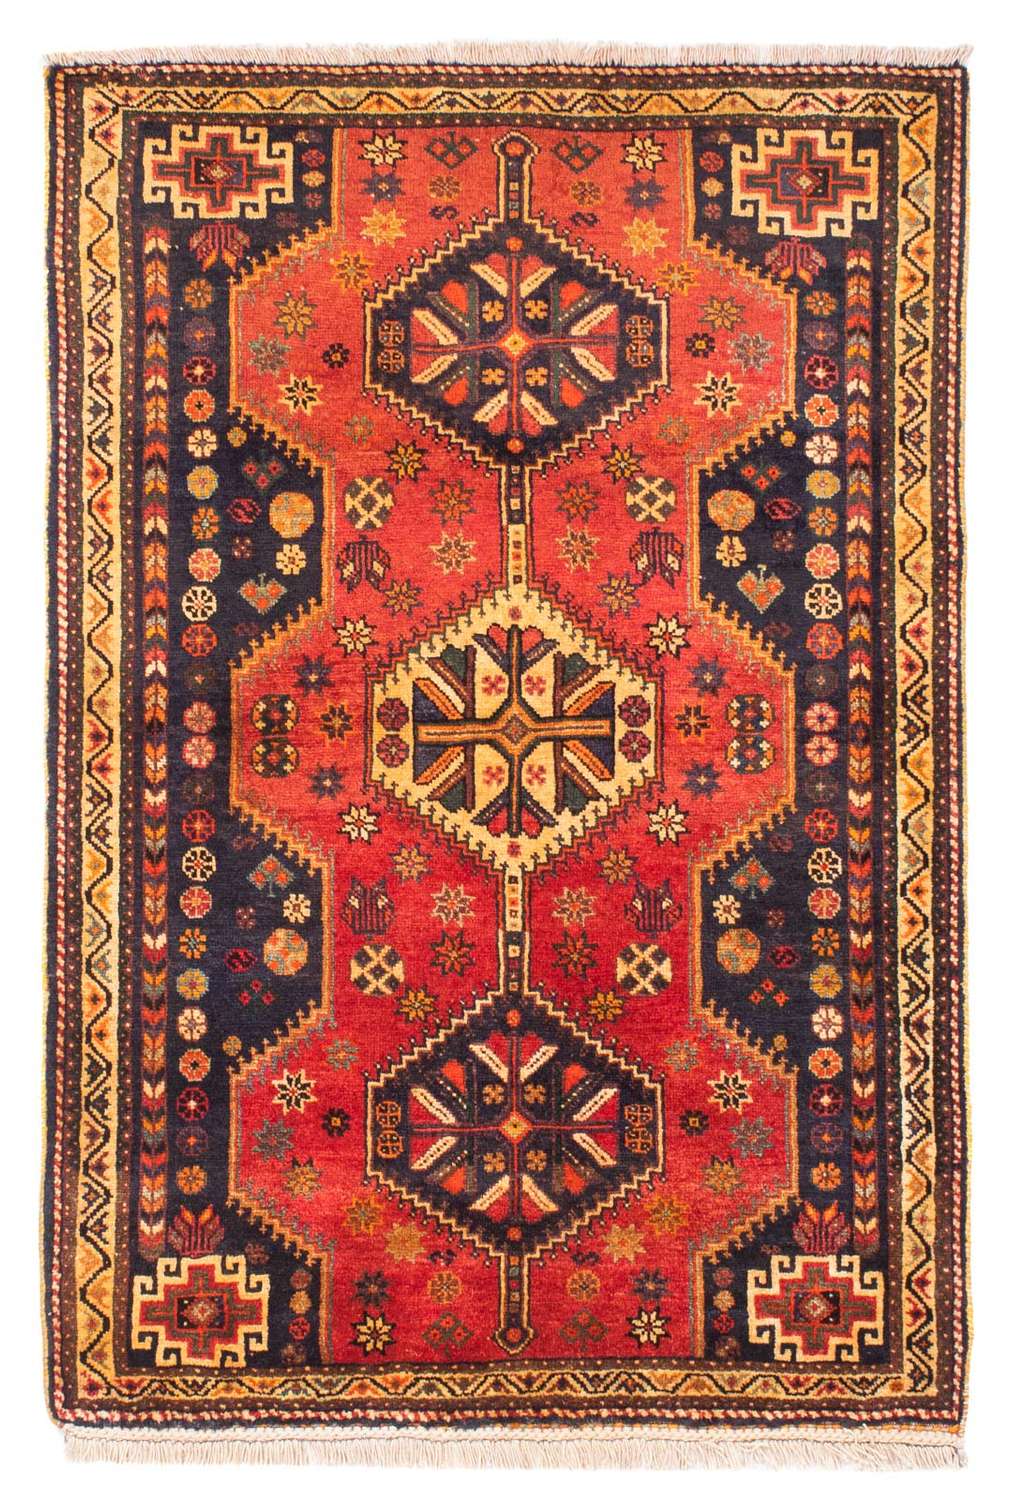 Alfombra persa - Nómada - 170 x 116 cm - rojo oscuro